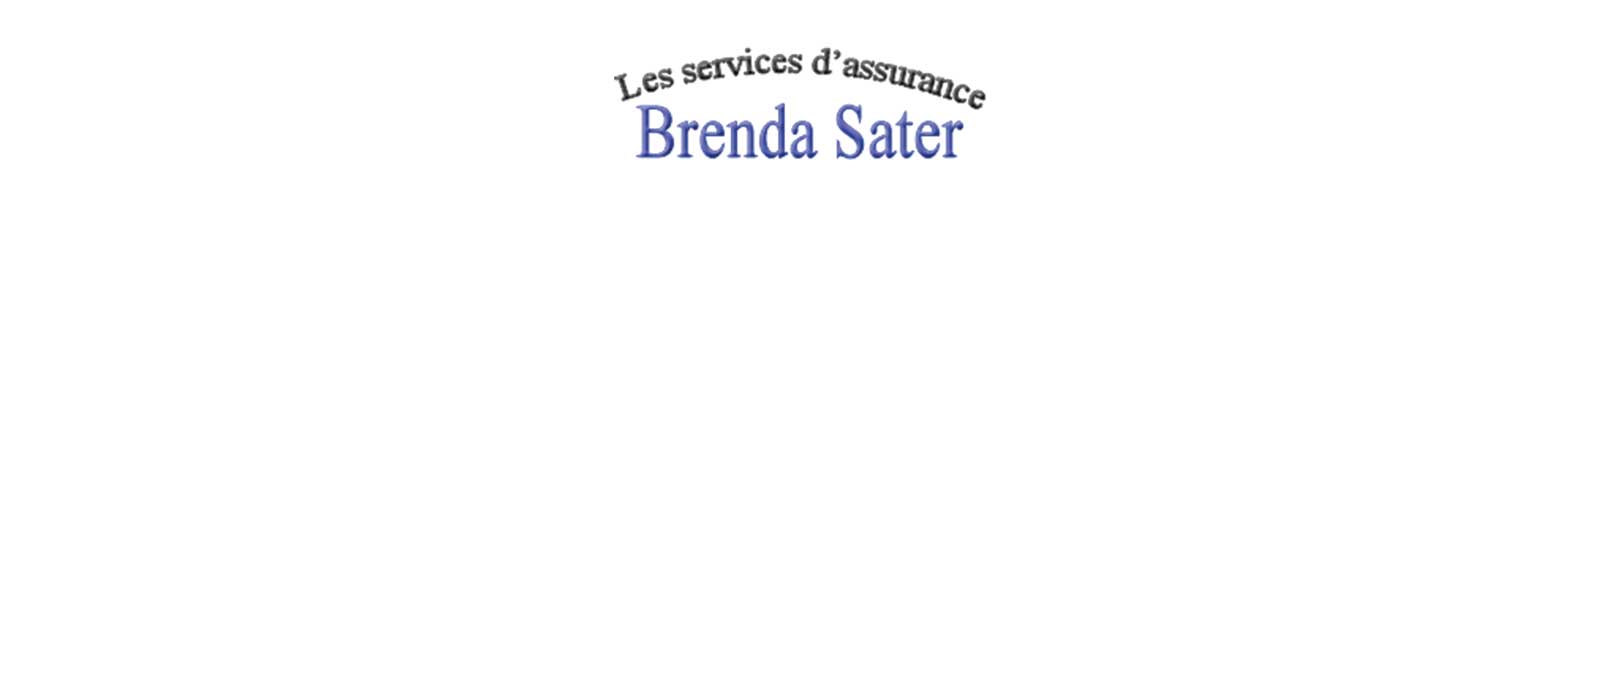 Les services d'assurance Brenda Sater